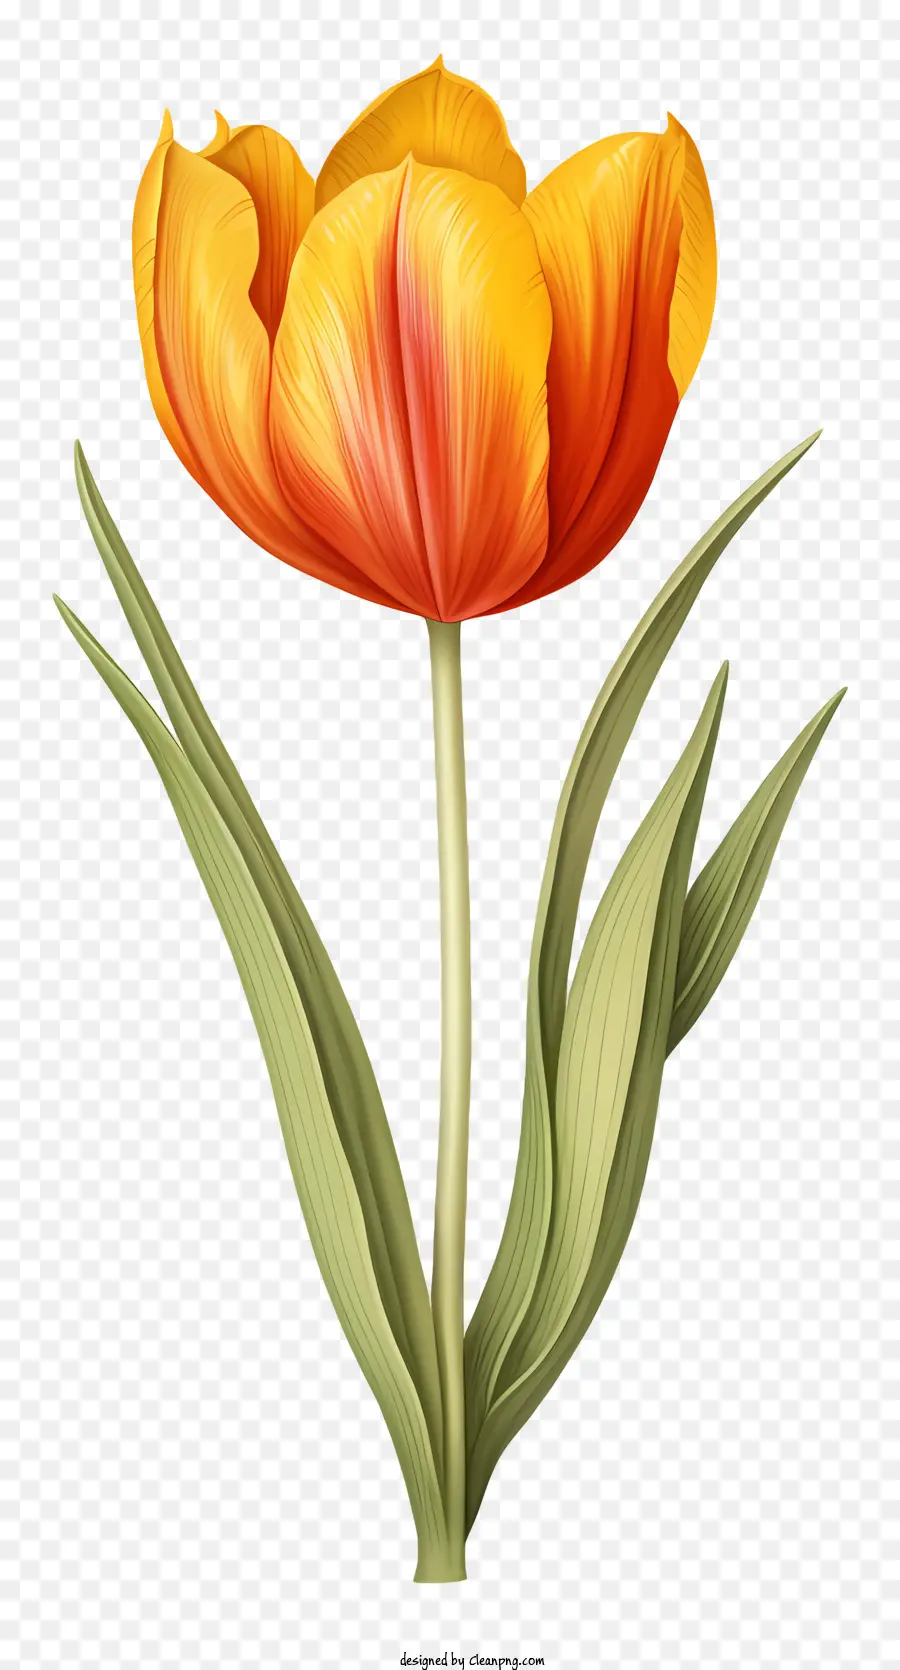 hoa màu hoa tulip màu xanh lá cây màu xanh lá cây tối - Tulip tươi sáng, rực rỡ với lá màu xanh lá cây trên nền tối